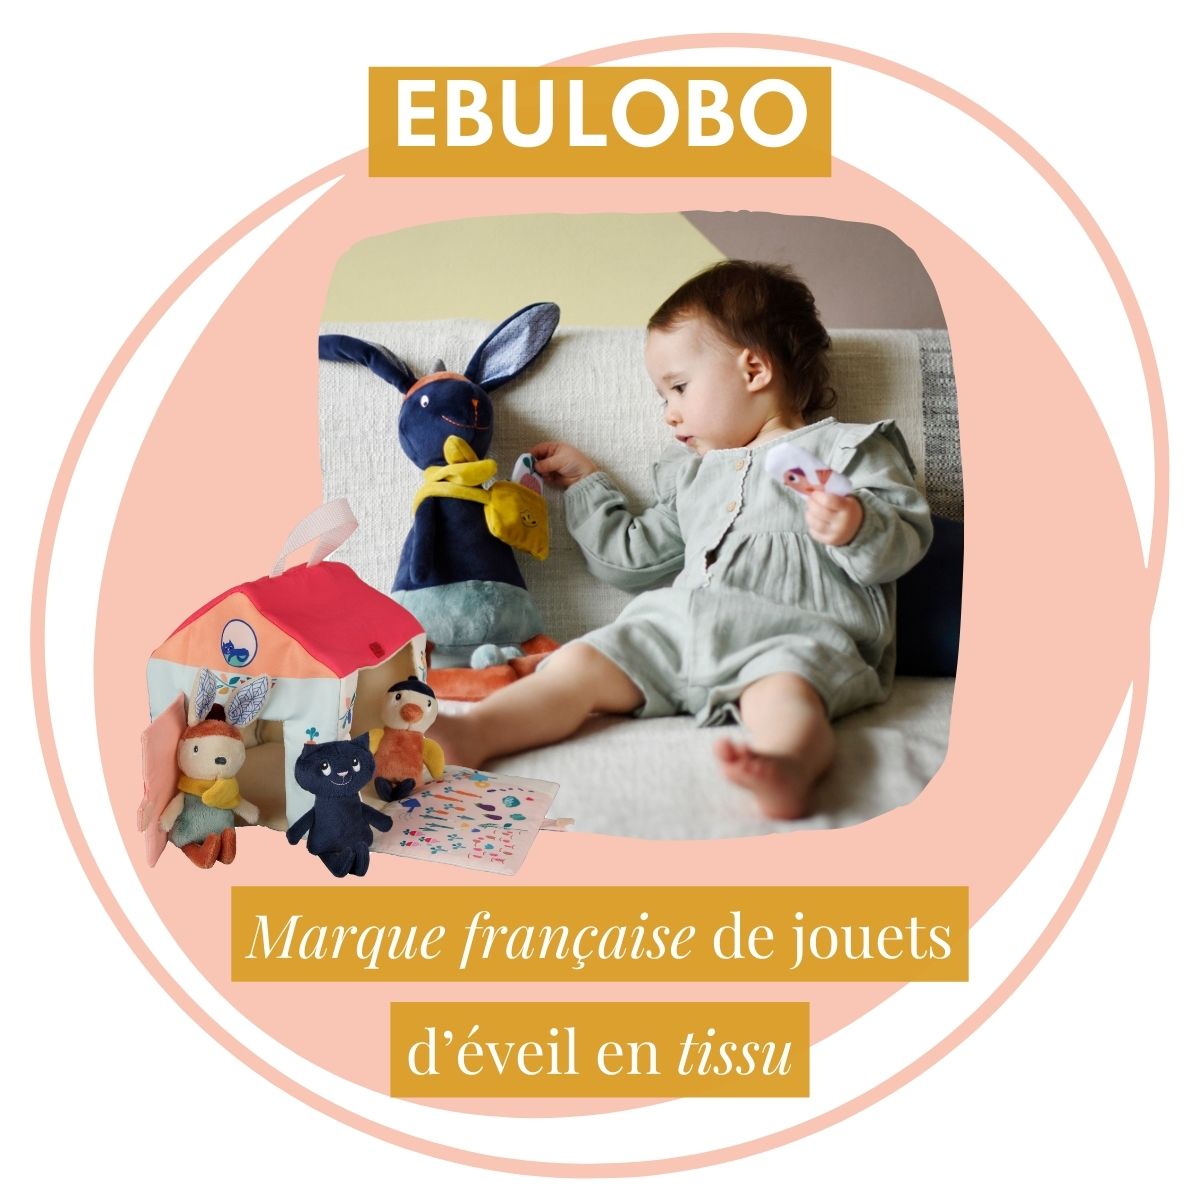 Ebulobo, marque française de jouets d'éveil en tissu pour bébé